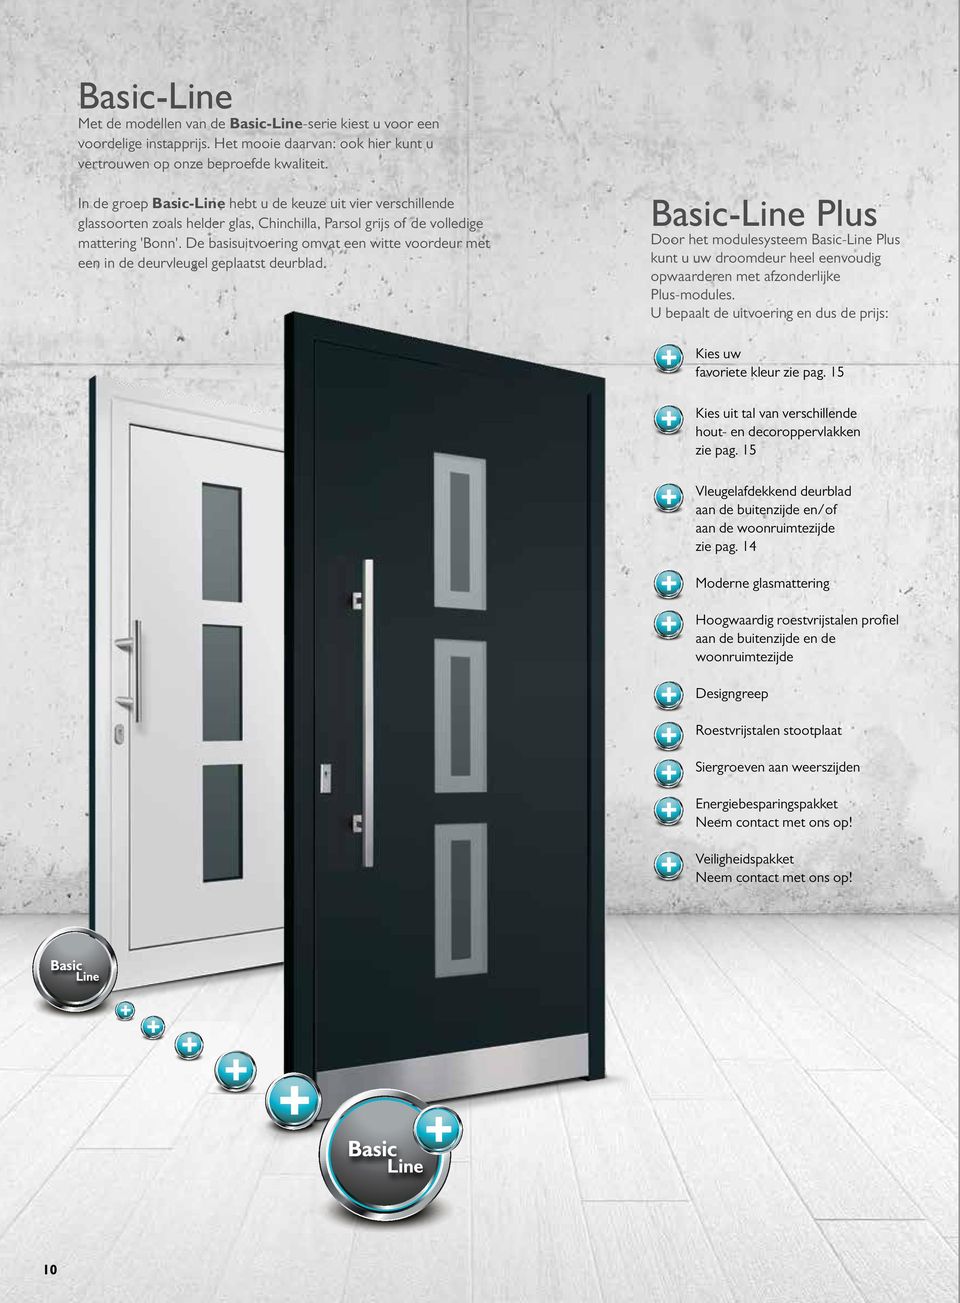 De basisuitvoering omvat een witte voordeur met een in de deurvleugel geplaatst deurblad.